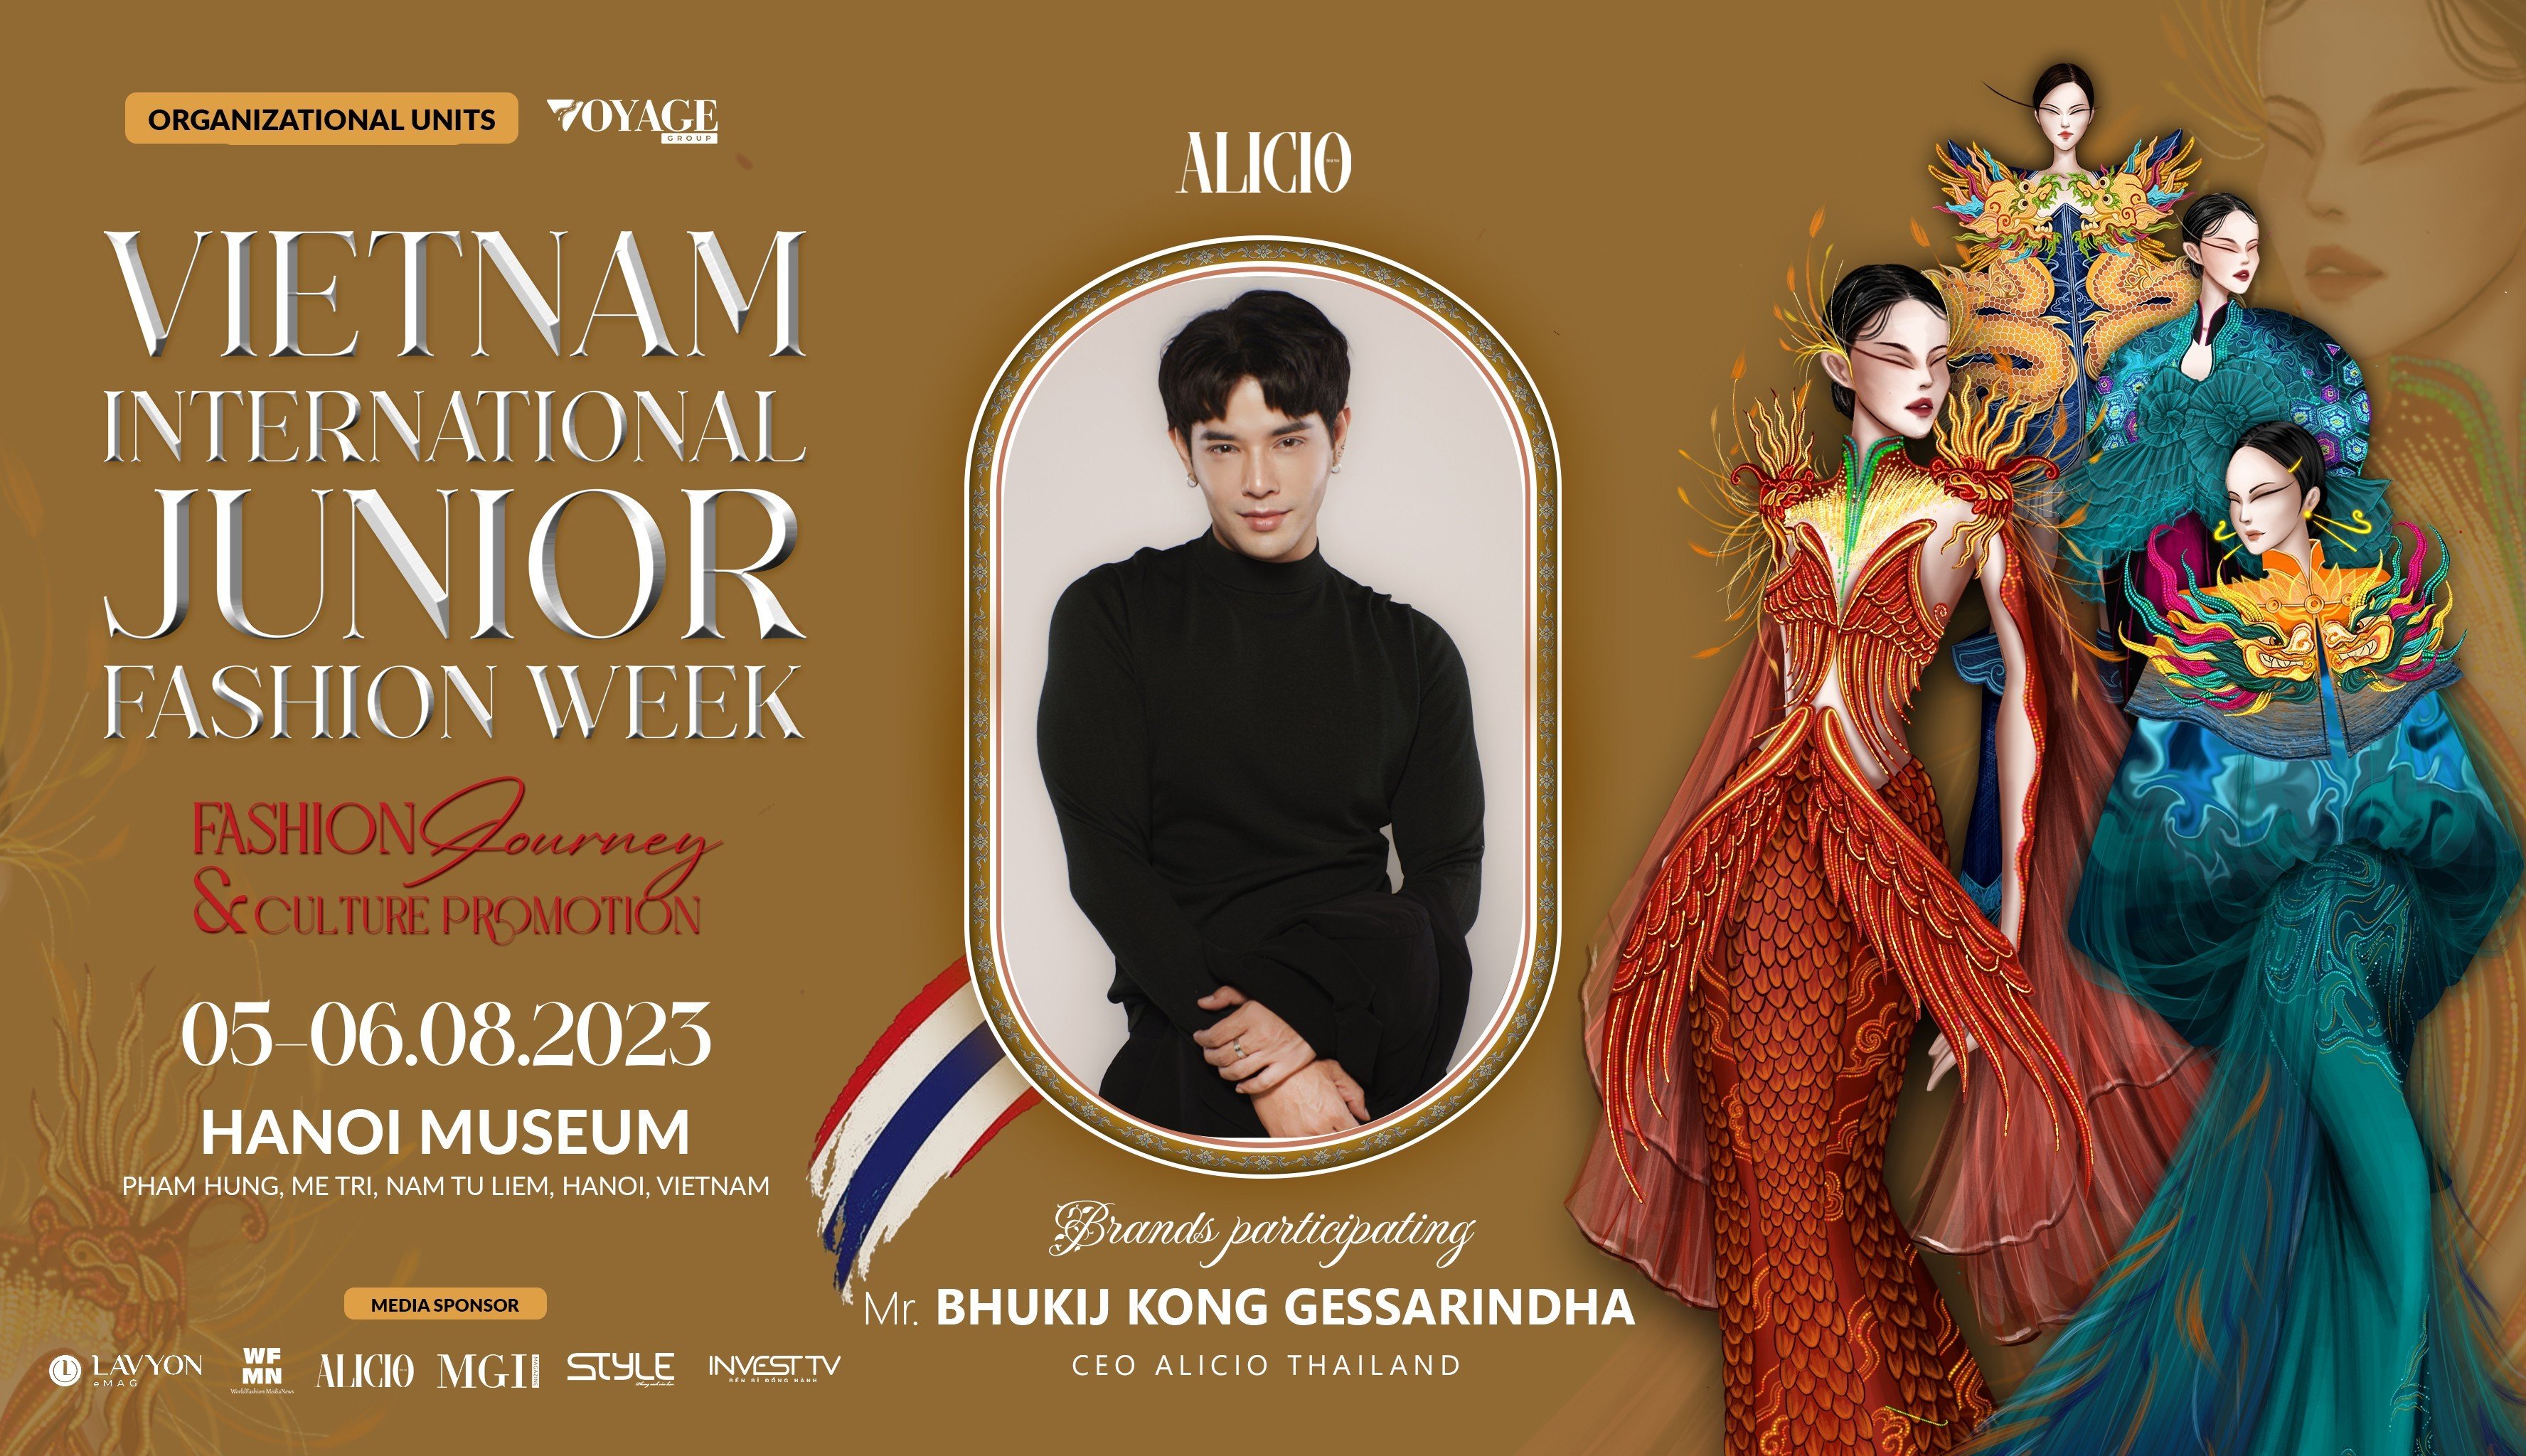 The first international fashion brand to participate in Vietnam International Junior Fashion Week 2023